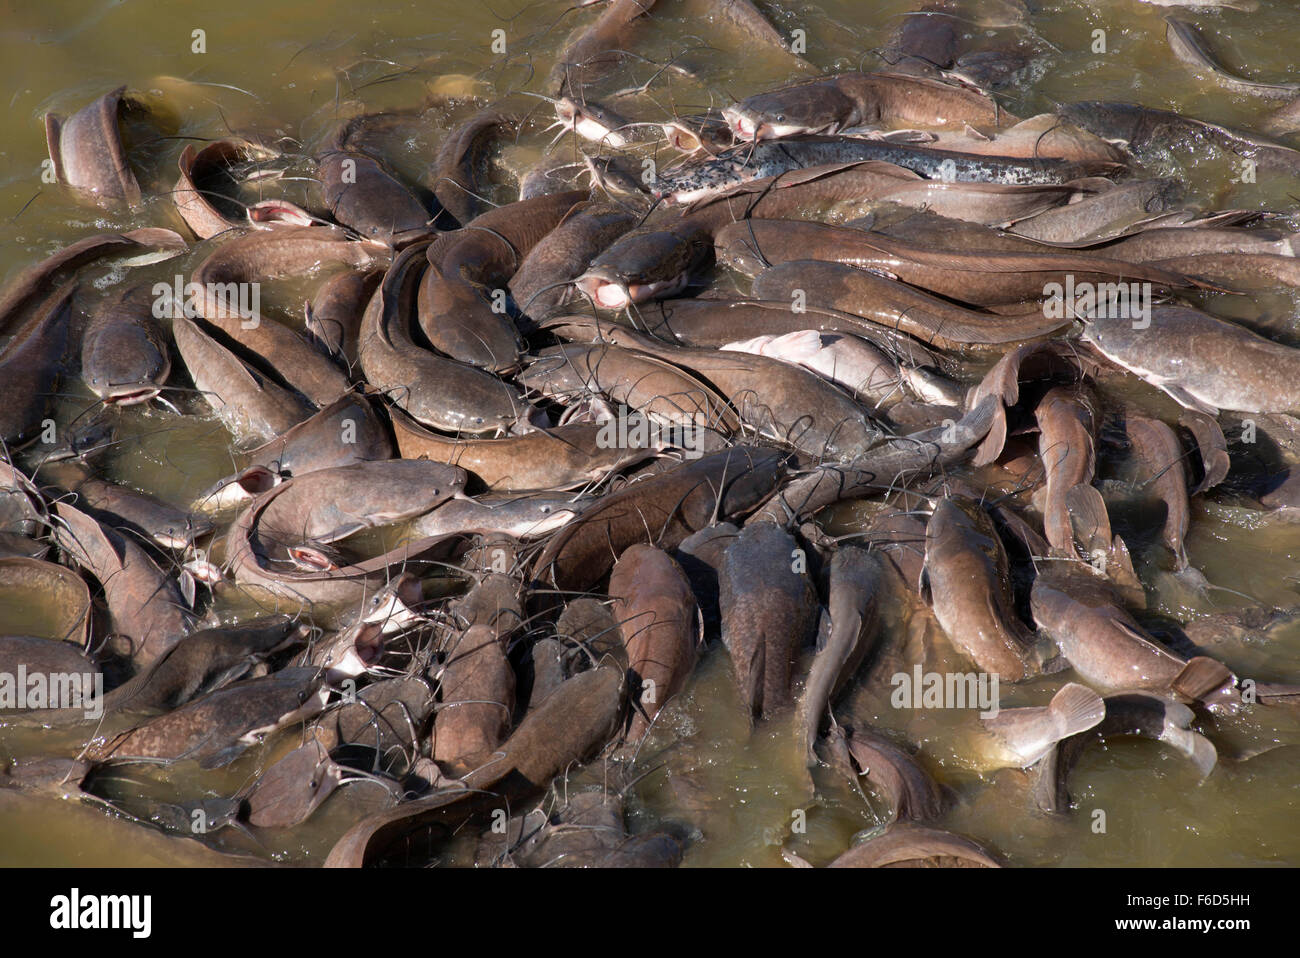 Swarm of catfish, gadi sagar lake, jaisalmer, rajasthan, india, asia Stock Photo